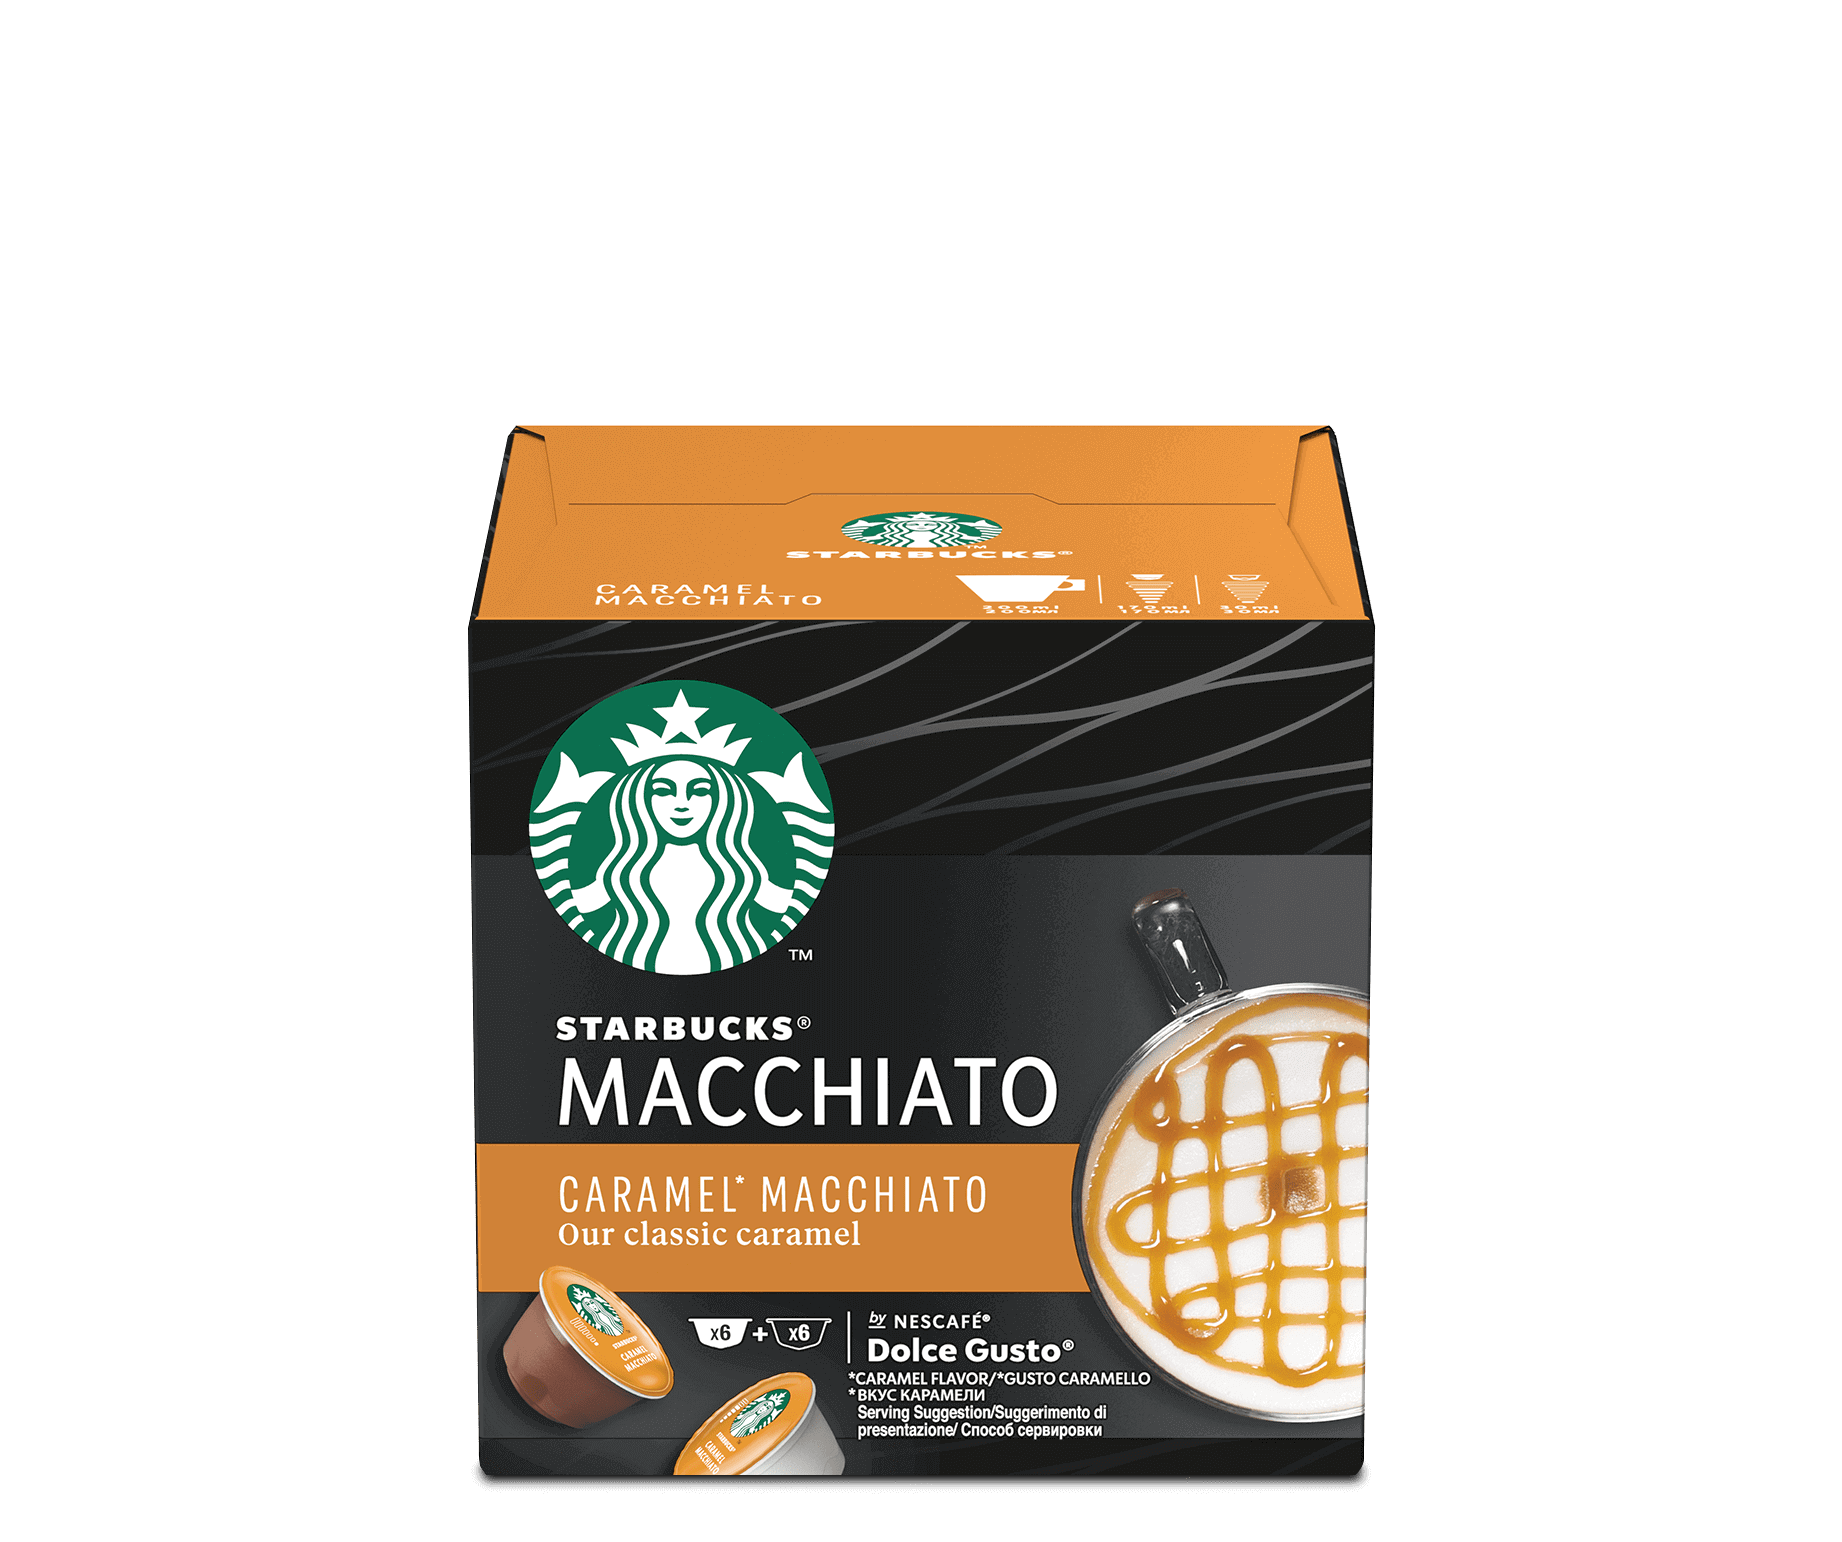 Touhou medios de comunicación champán Caramel Macchiato by Nescafé® Dolce Gusto® Cafés de Starbucks® en casa